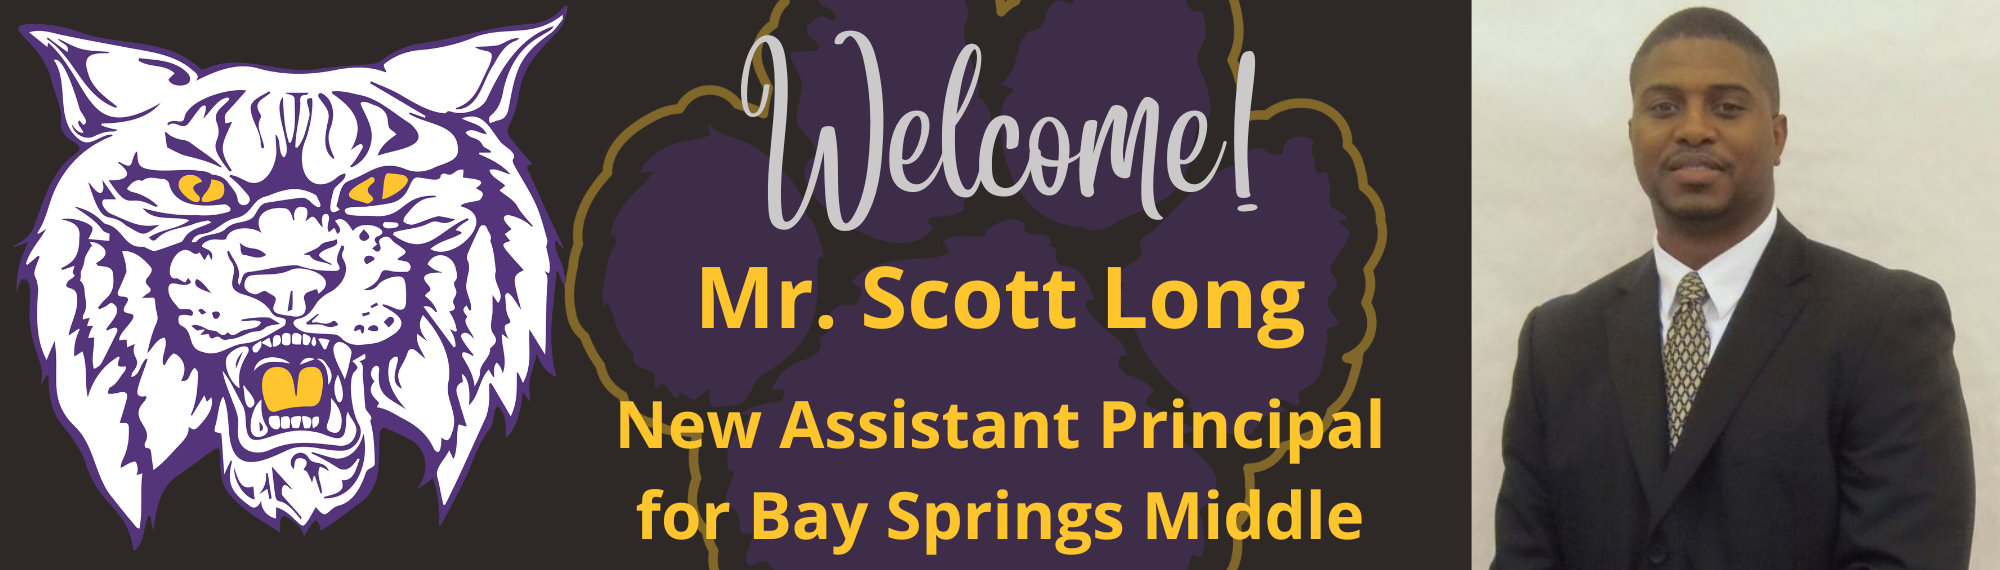 New Assistant Principal Scott Long